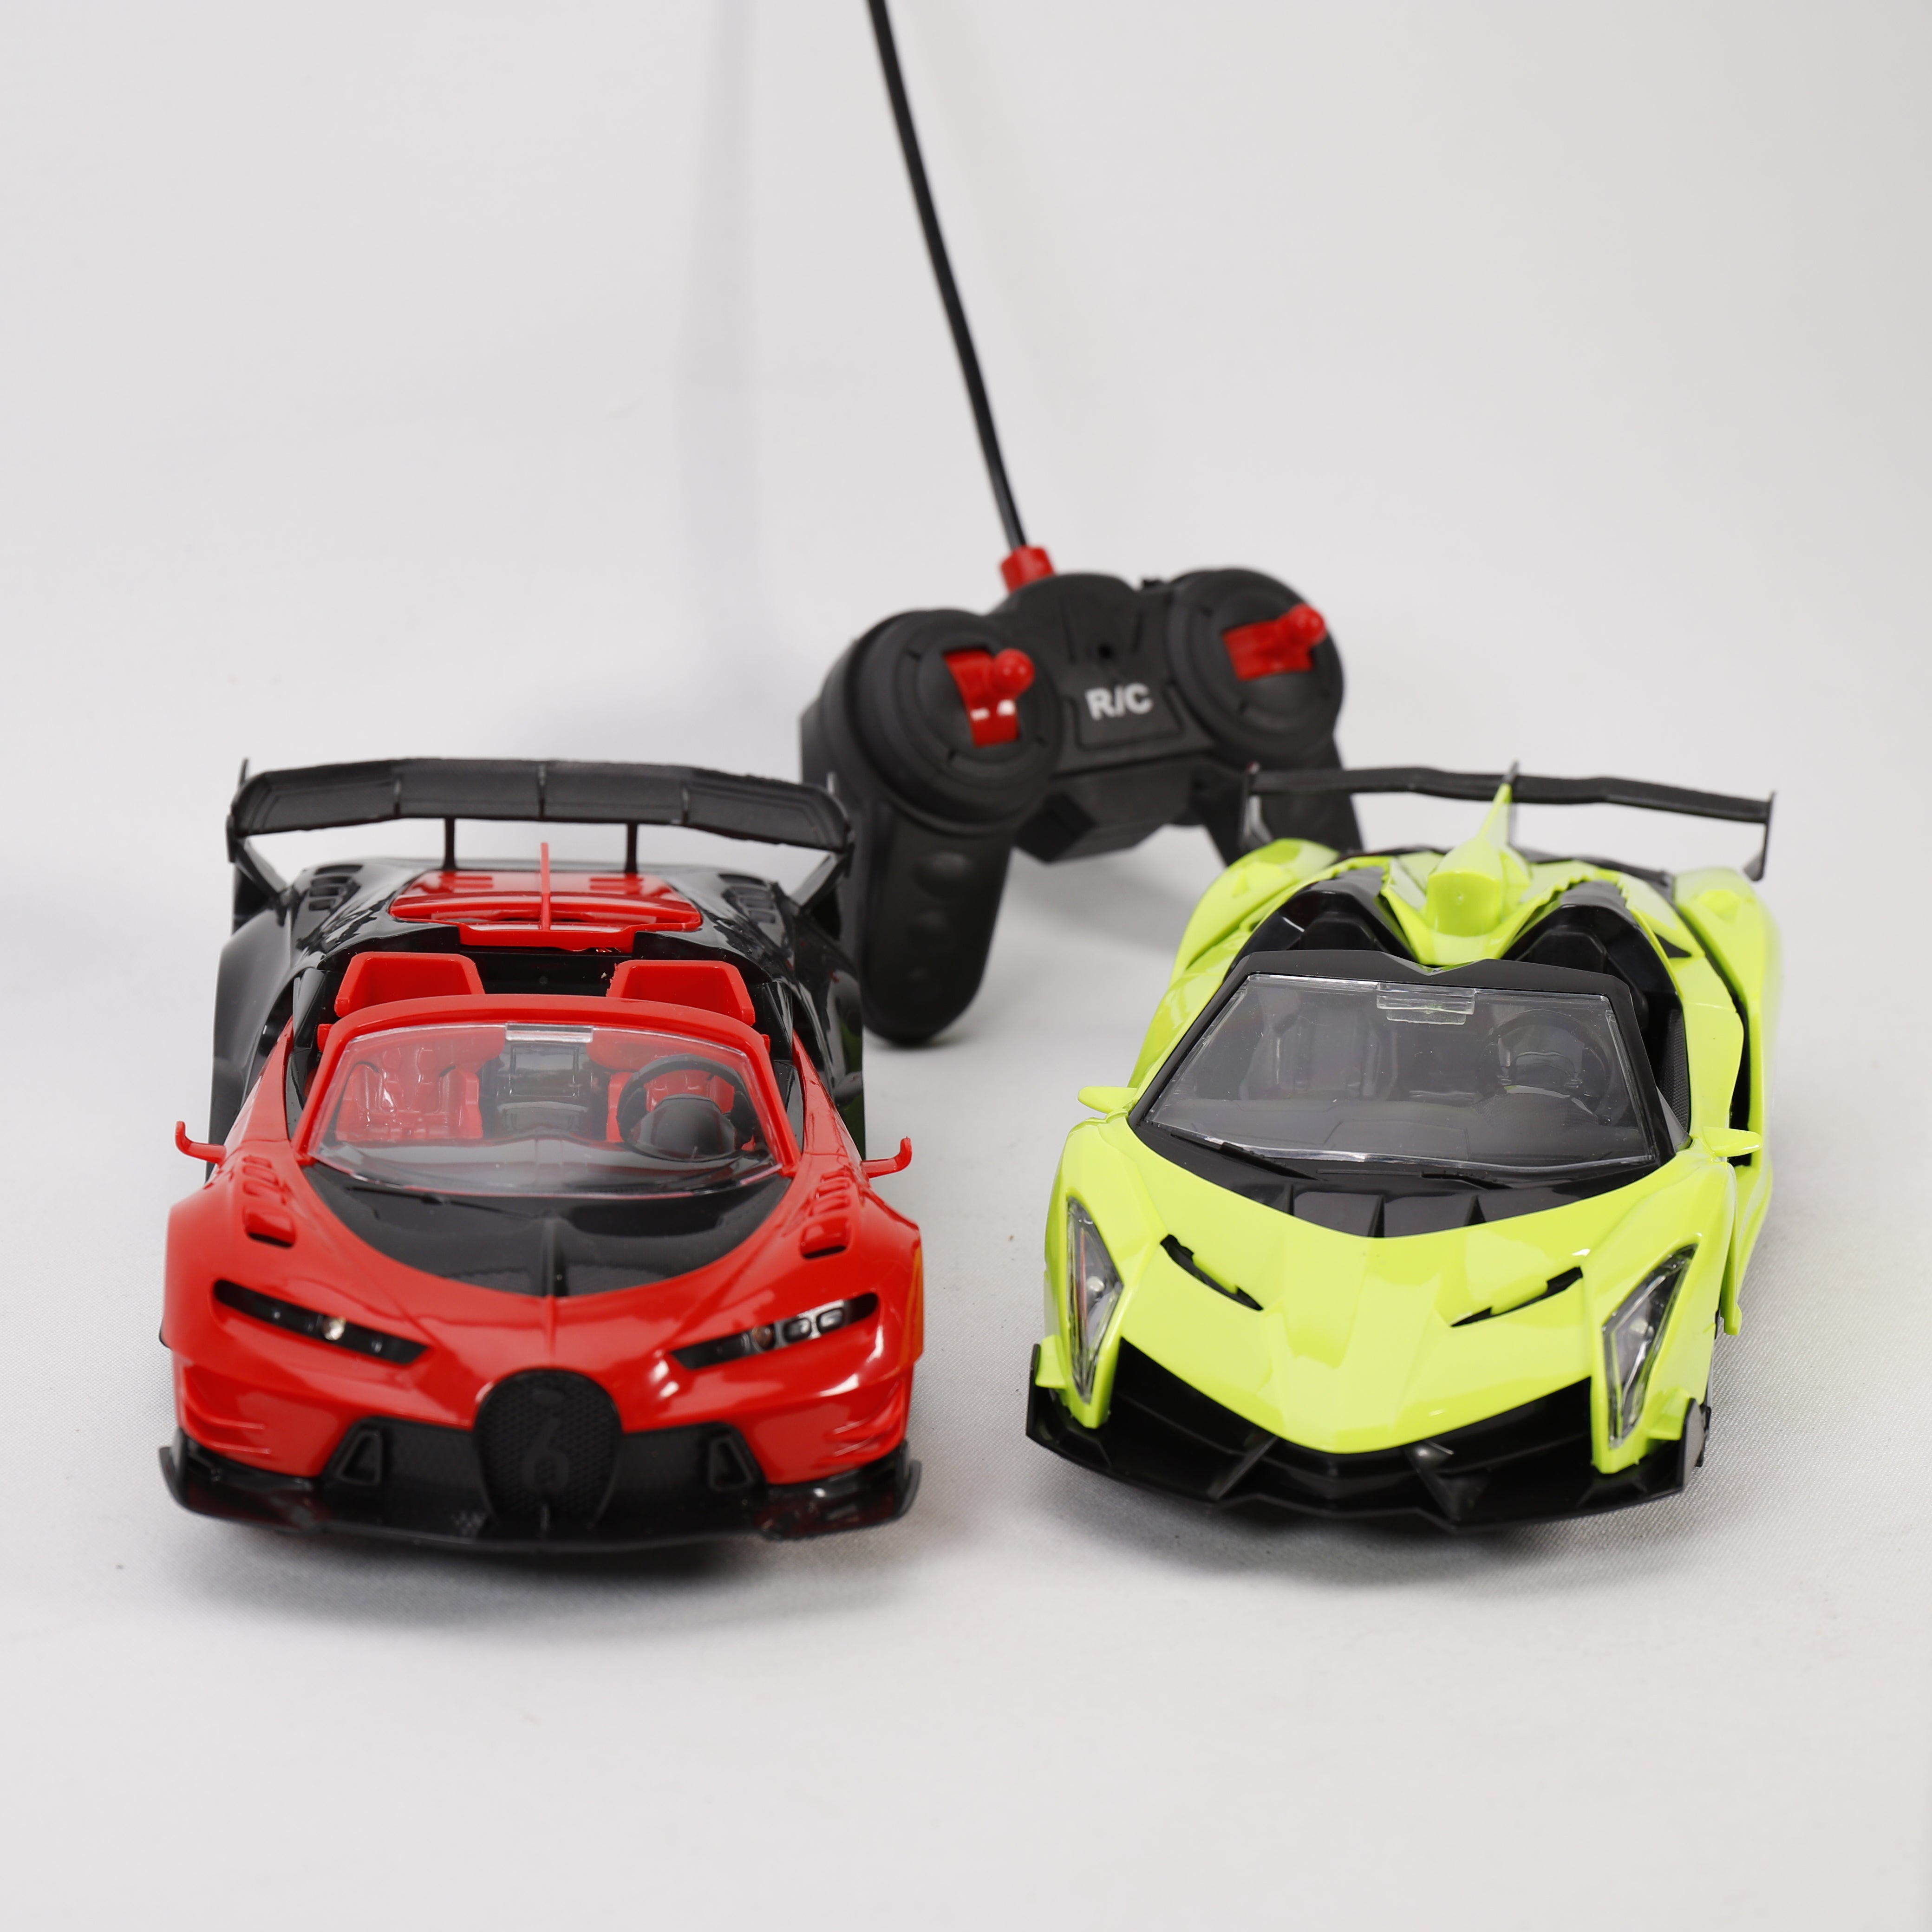 Sport Car 27mHz, TOP Auto mit Kontrolle, Spielzeug mit Fernbedienung, LED Licht